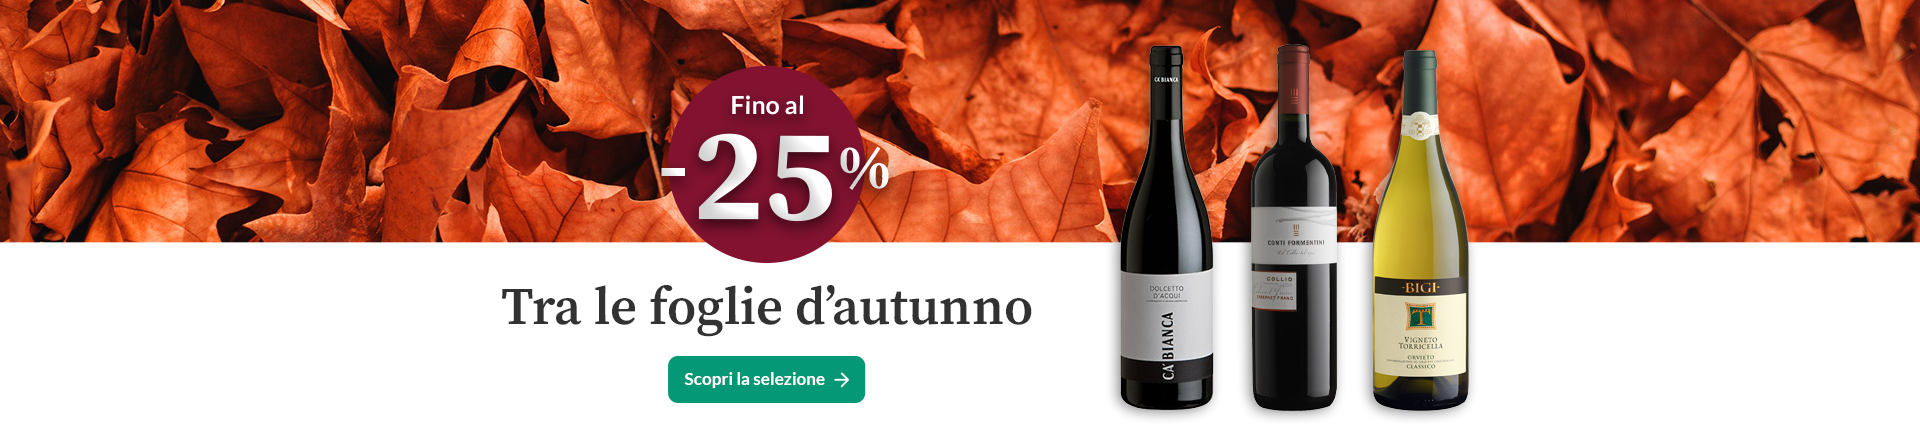 NEOCAMPANA - Chianti DOCG Governo all\'Uso Toscano | Vinicum.com, vendita  vino online | Weinpakete